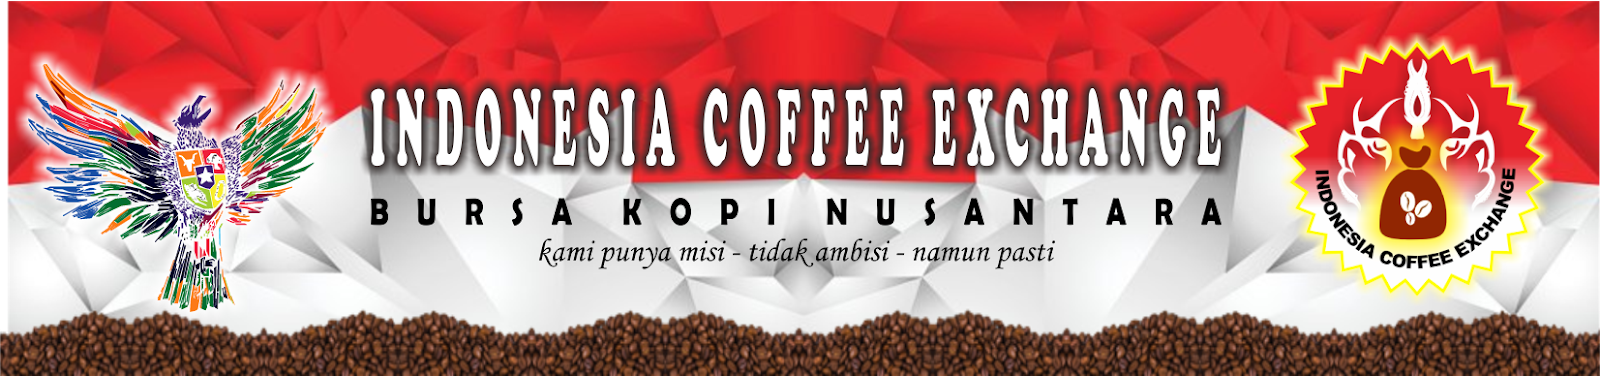 Indonesia Coffee Exchange